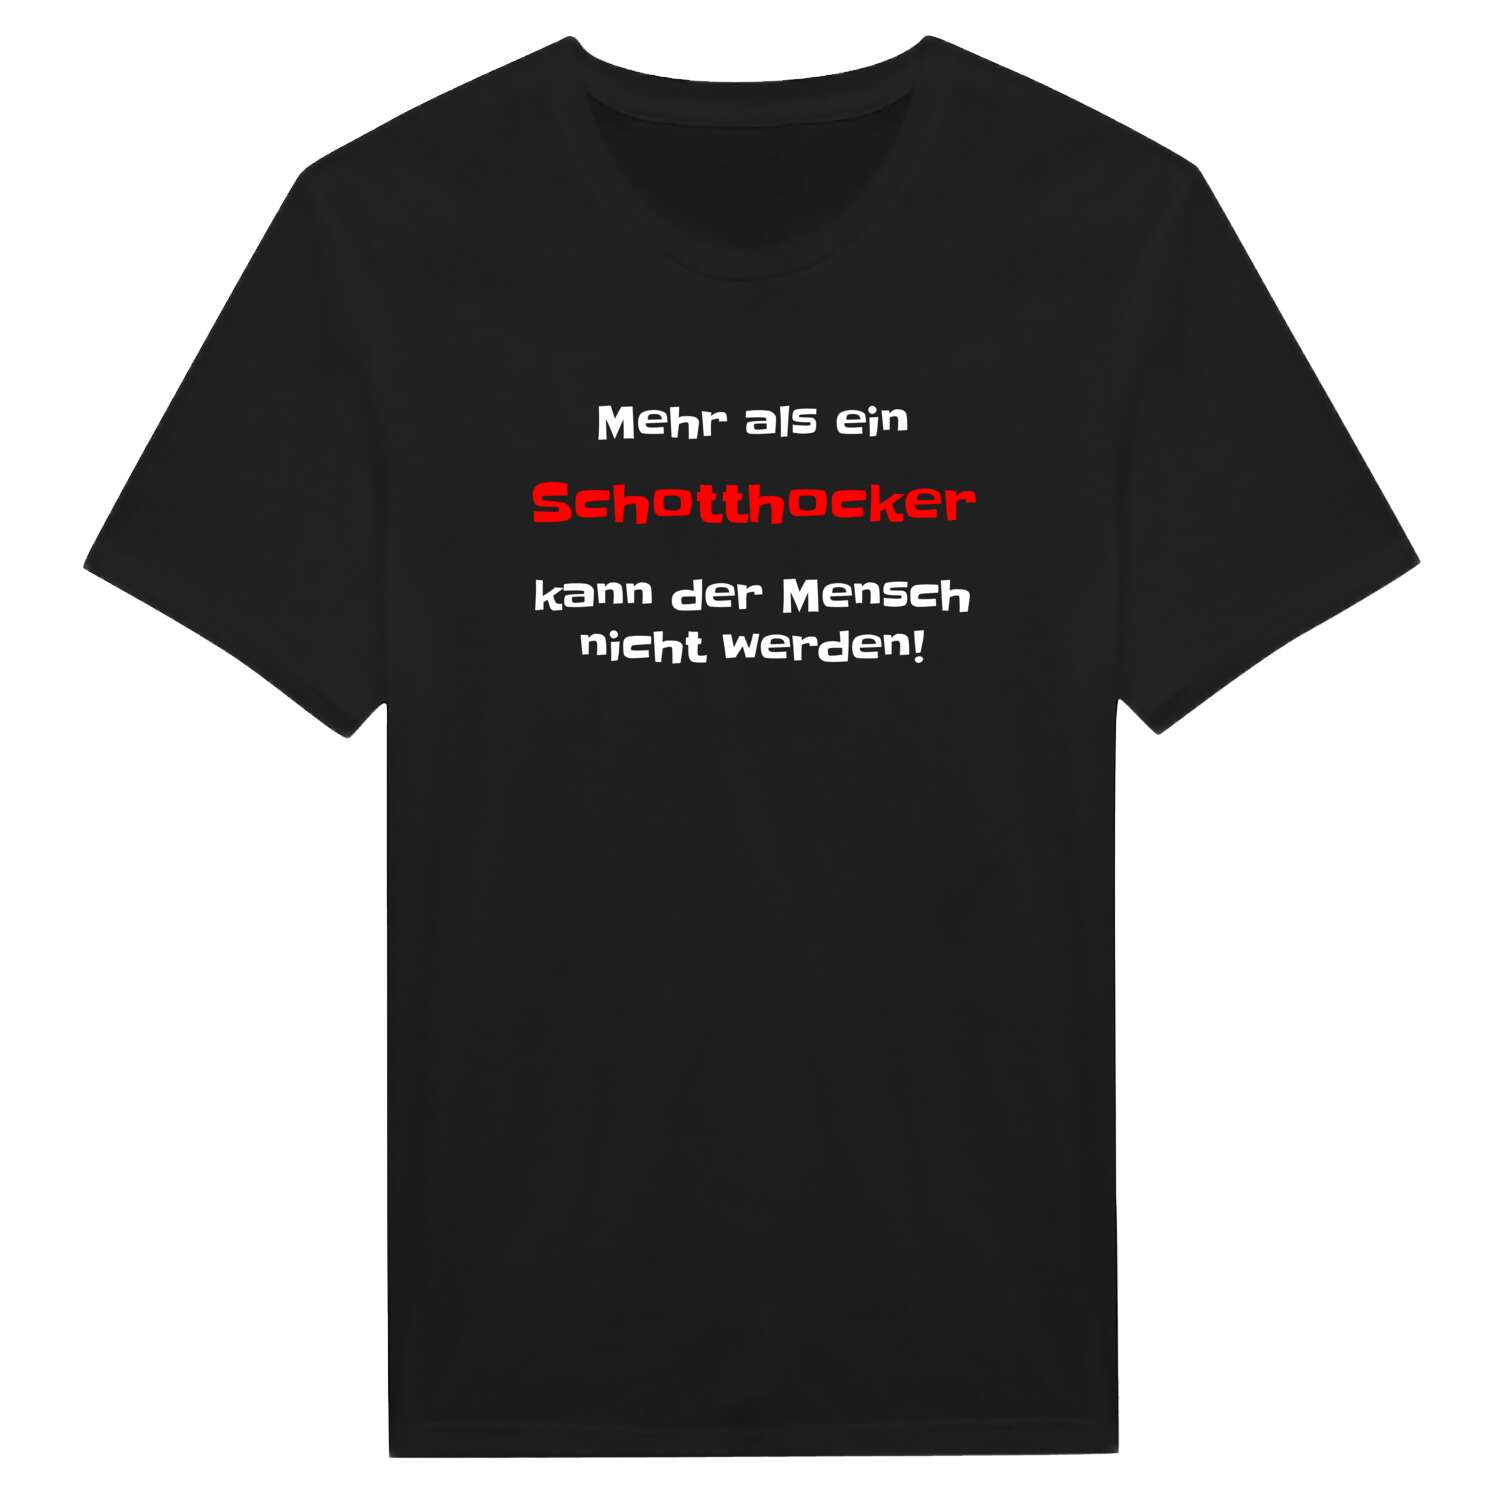 Schotthock T-Shirt »Mehr als ein«